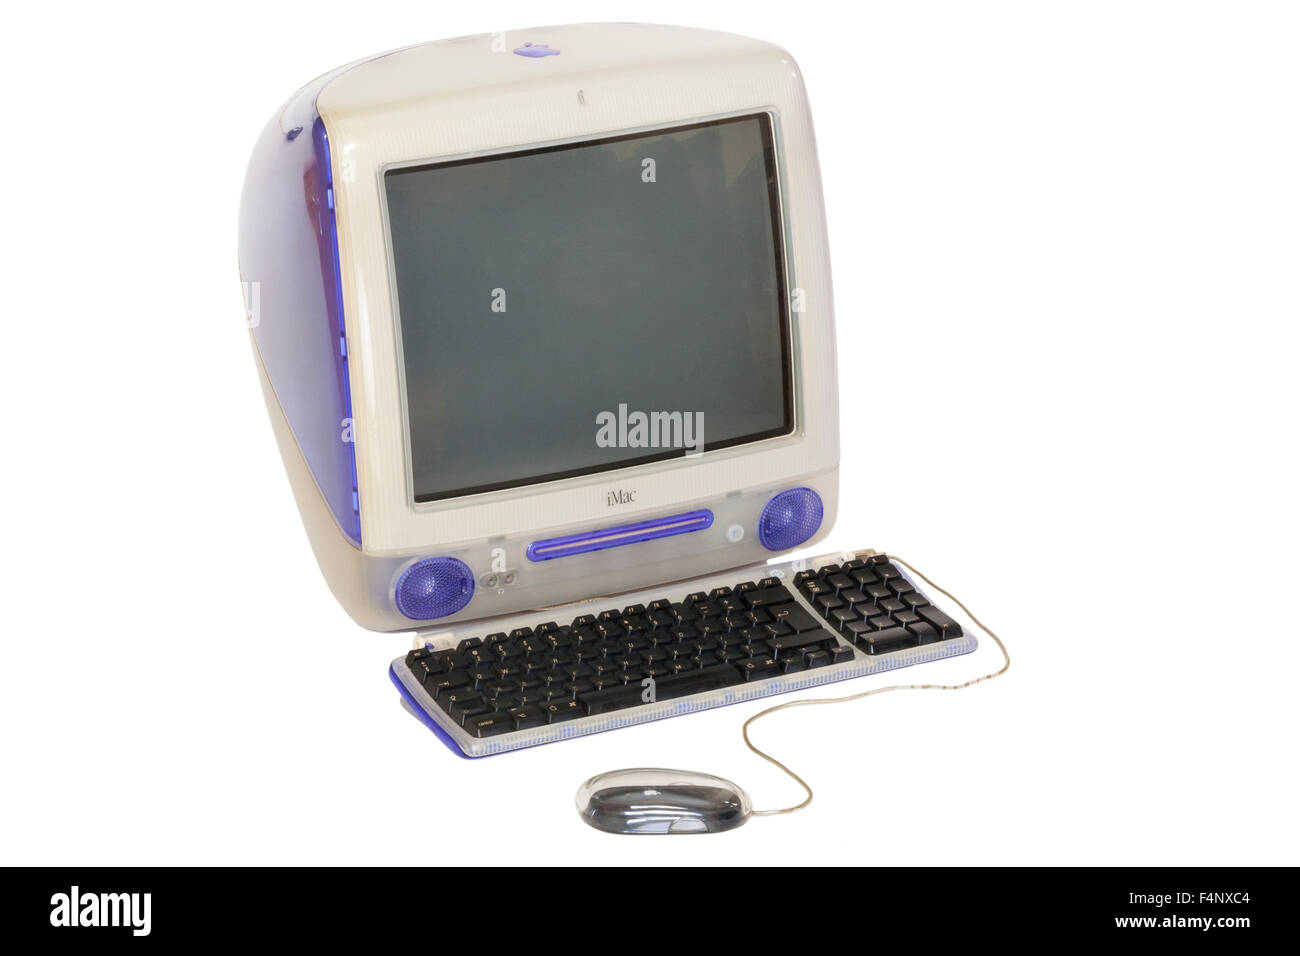 Originale / old Apple iMac personal desk top computer Power PC G3 modello CRT con schermo di tipo, la fine degli anni novanta il modello che esegue Mac OS 9. Foto Stock